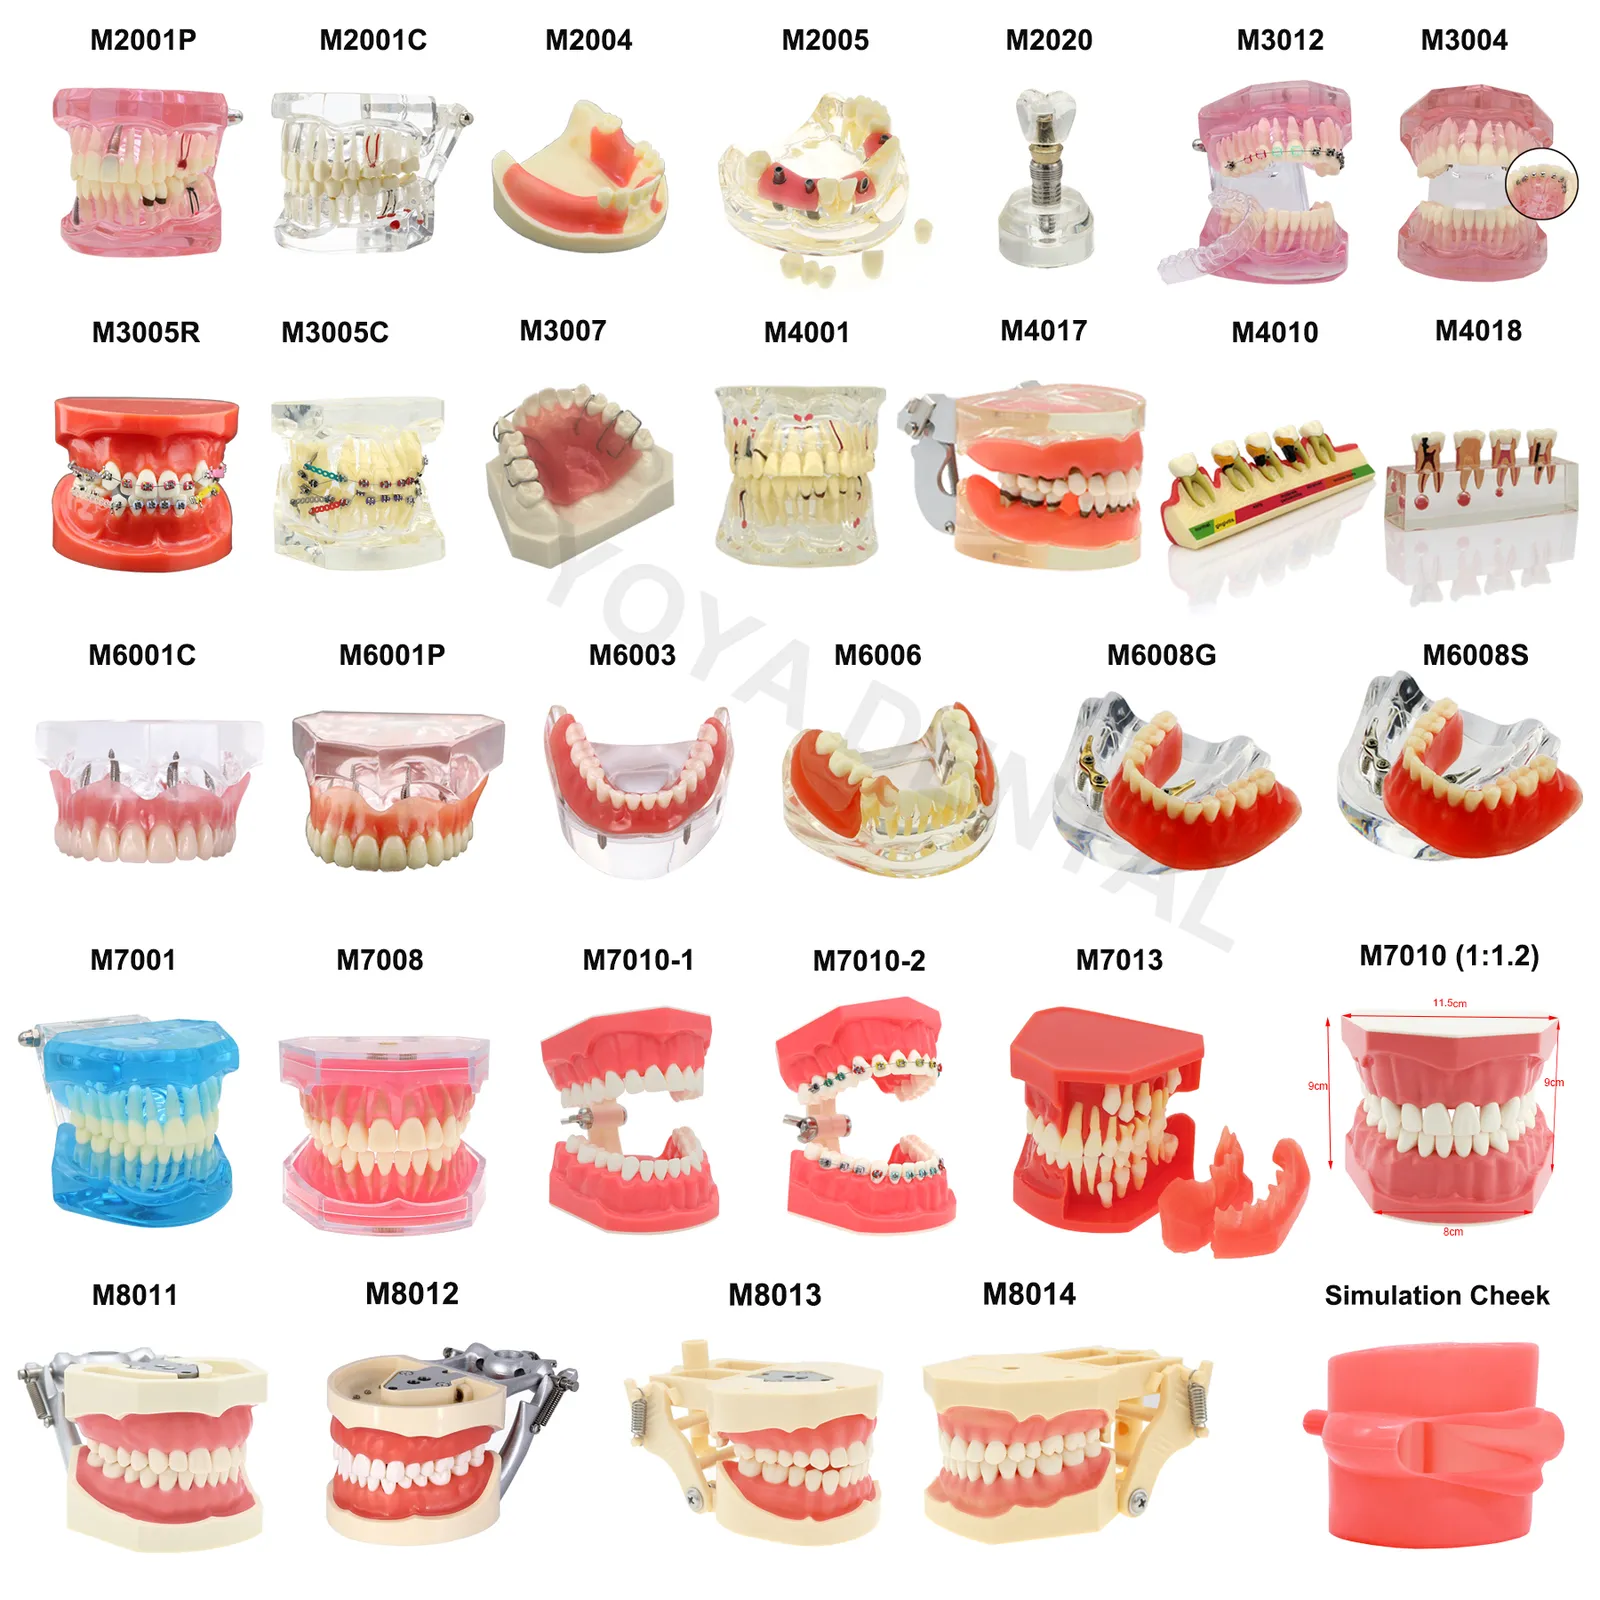 Andere Mundhygiene-Modelle verschiedener Zahnmodellzähne, zahnärztliche Lehrmodelle, Studie, kieferorthopädische, abnehmbare Zähne, Implantatmodelle, Zahnarztmaterial 230524